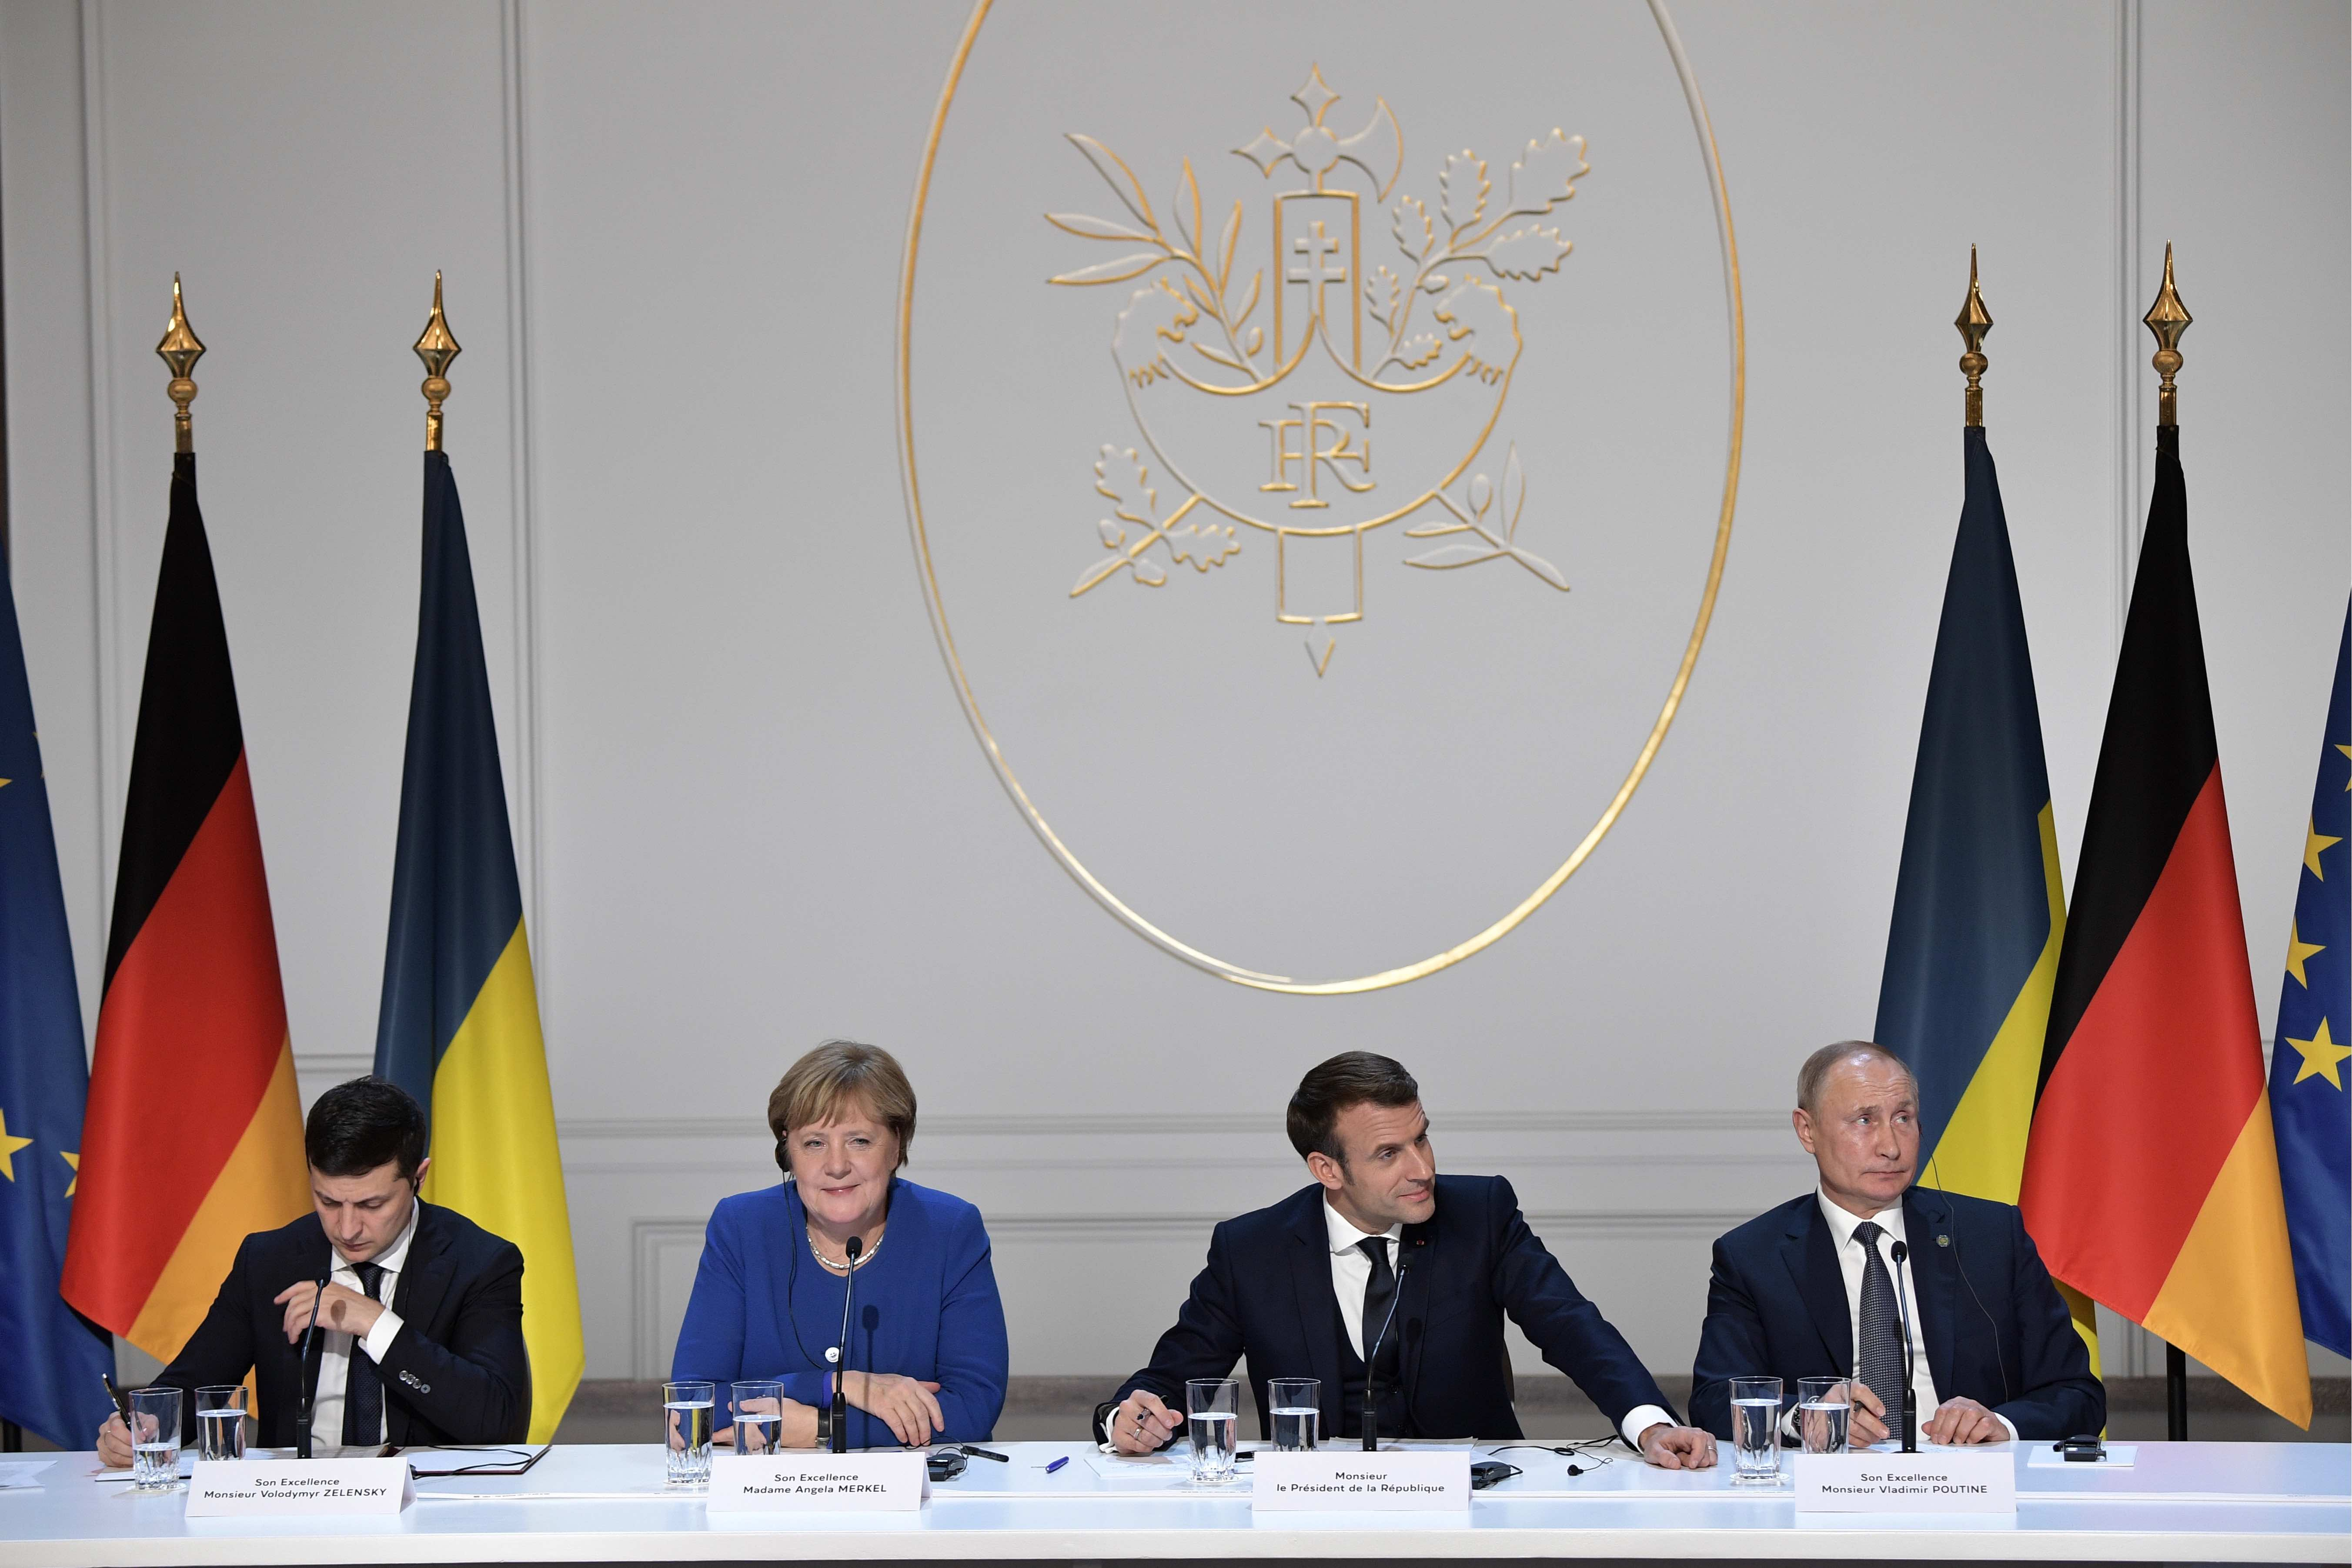 Переговоры перспектив. Ангела Меркель нормандская четверка. Саммит нормандской четверки 2019.